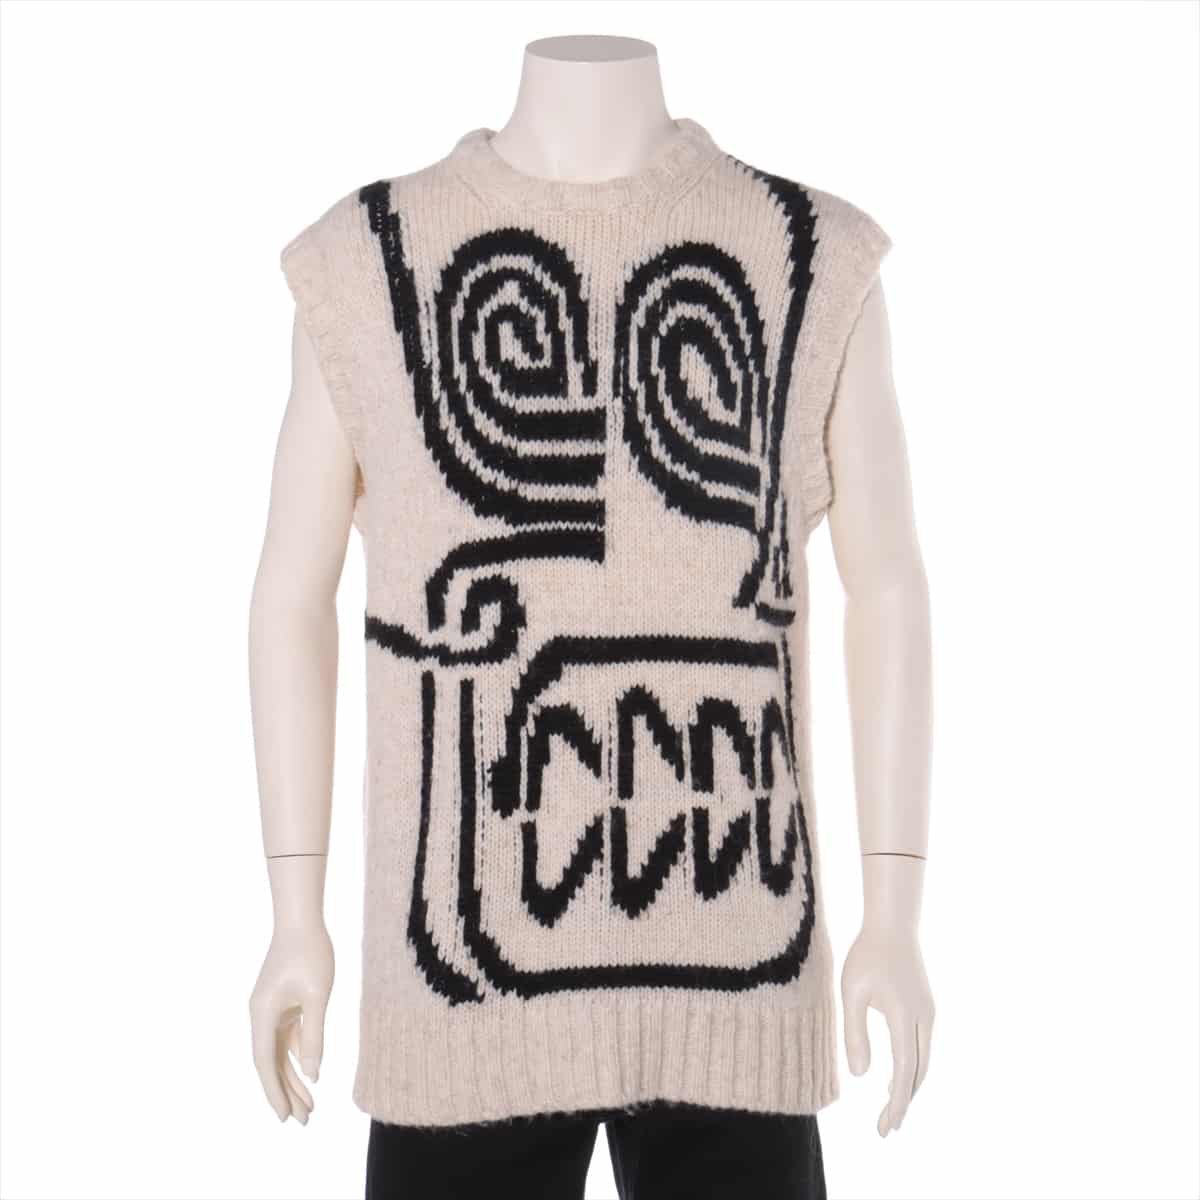 Moncler Genius 1952 18 years wool x acrylic Knit Vest L Men's Beige